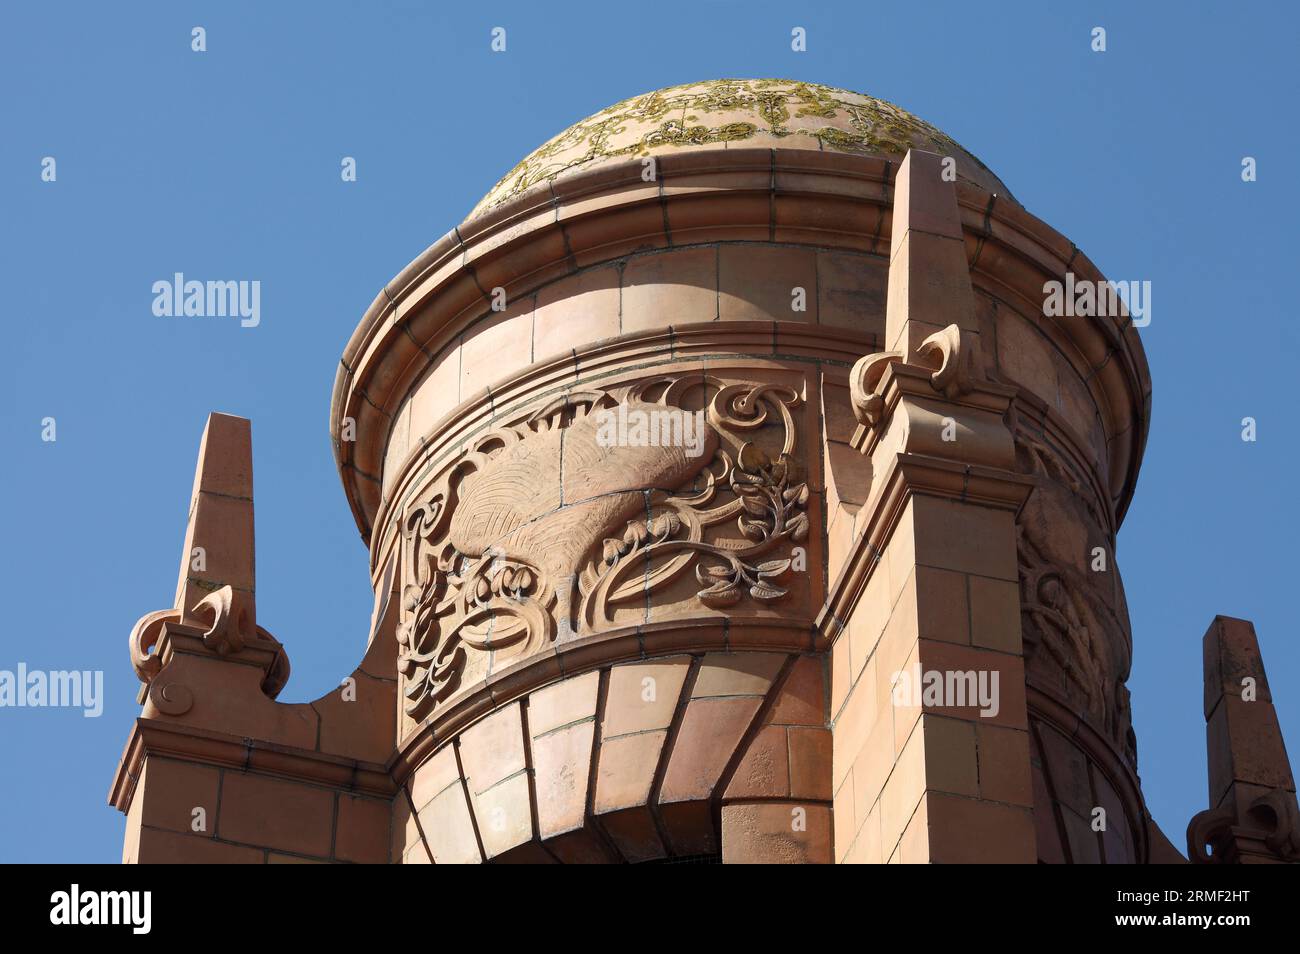 Gros plan de l'une des tours en dôme de l'hippodrome de Great Yarmouth, montrant des détails art nouveau courbes. Banque D'Images